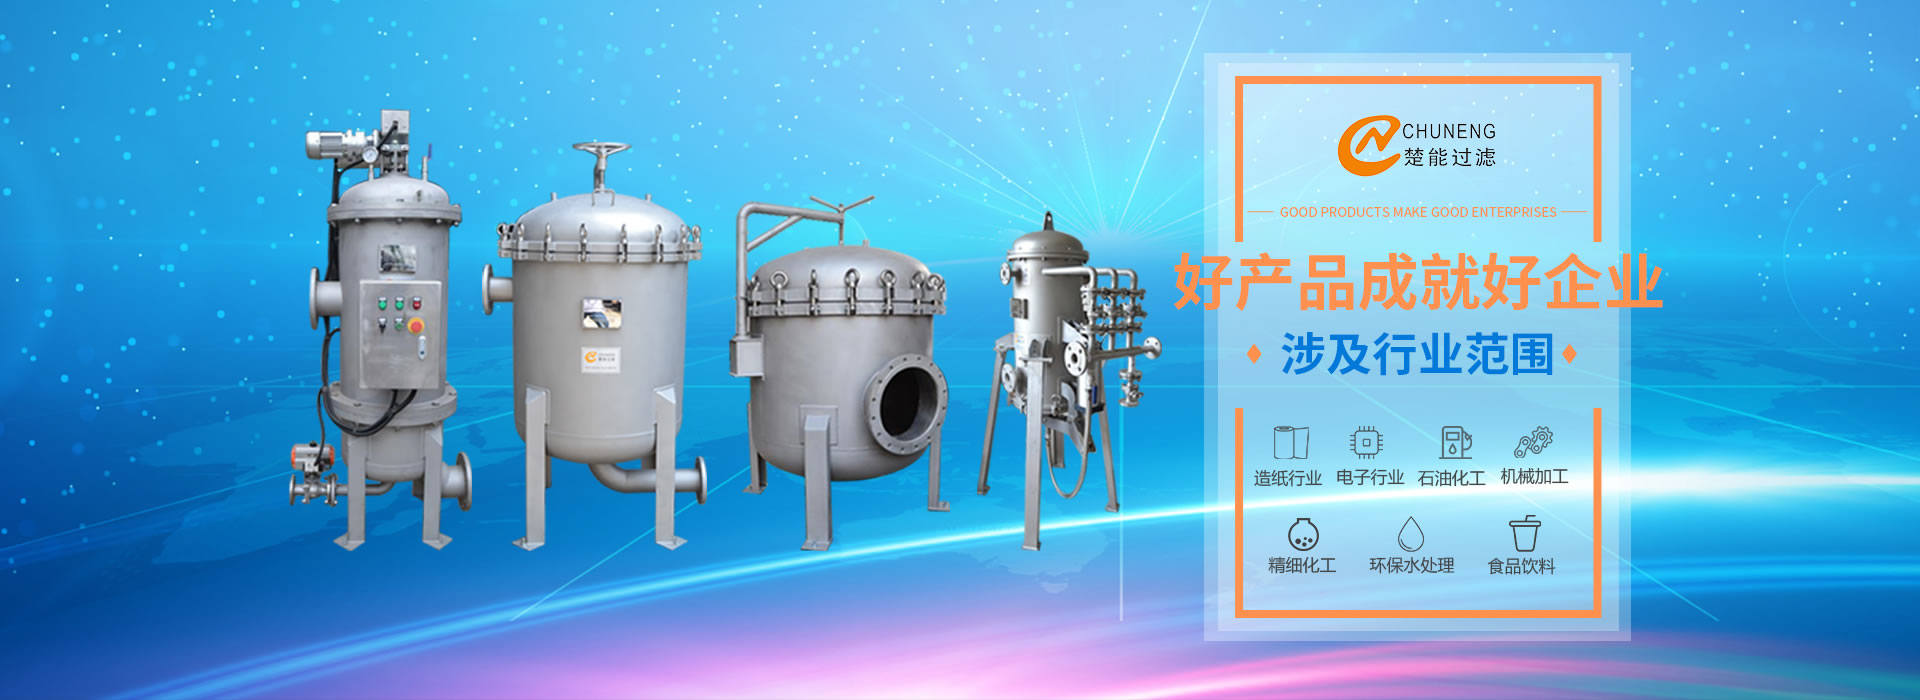 上海楚能工業過濾系統有限公司是集研發、制造、銷售/服務于一體的過濾設備與過濾元件專業生產廠家